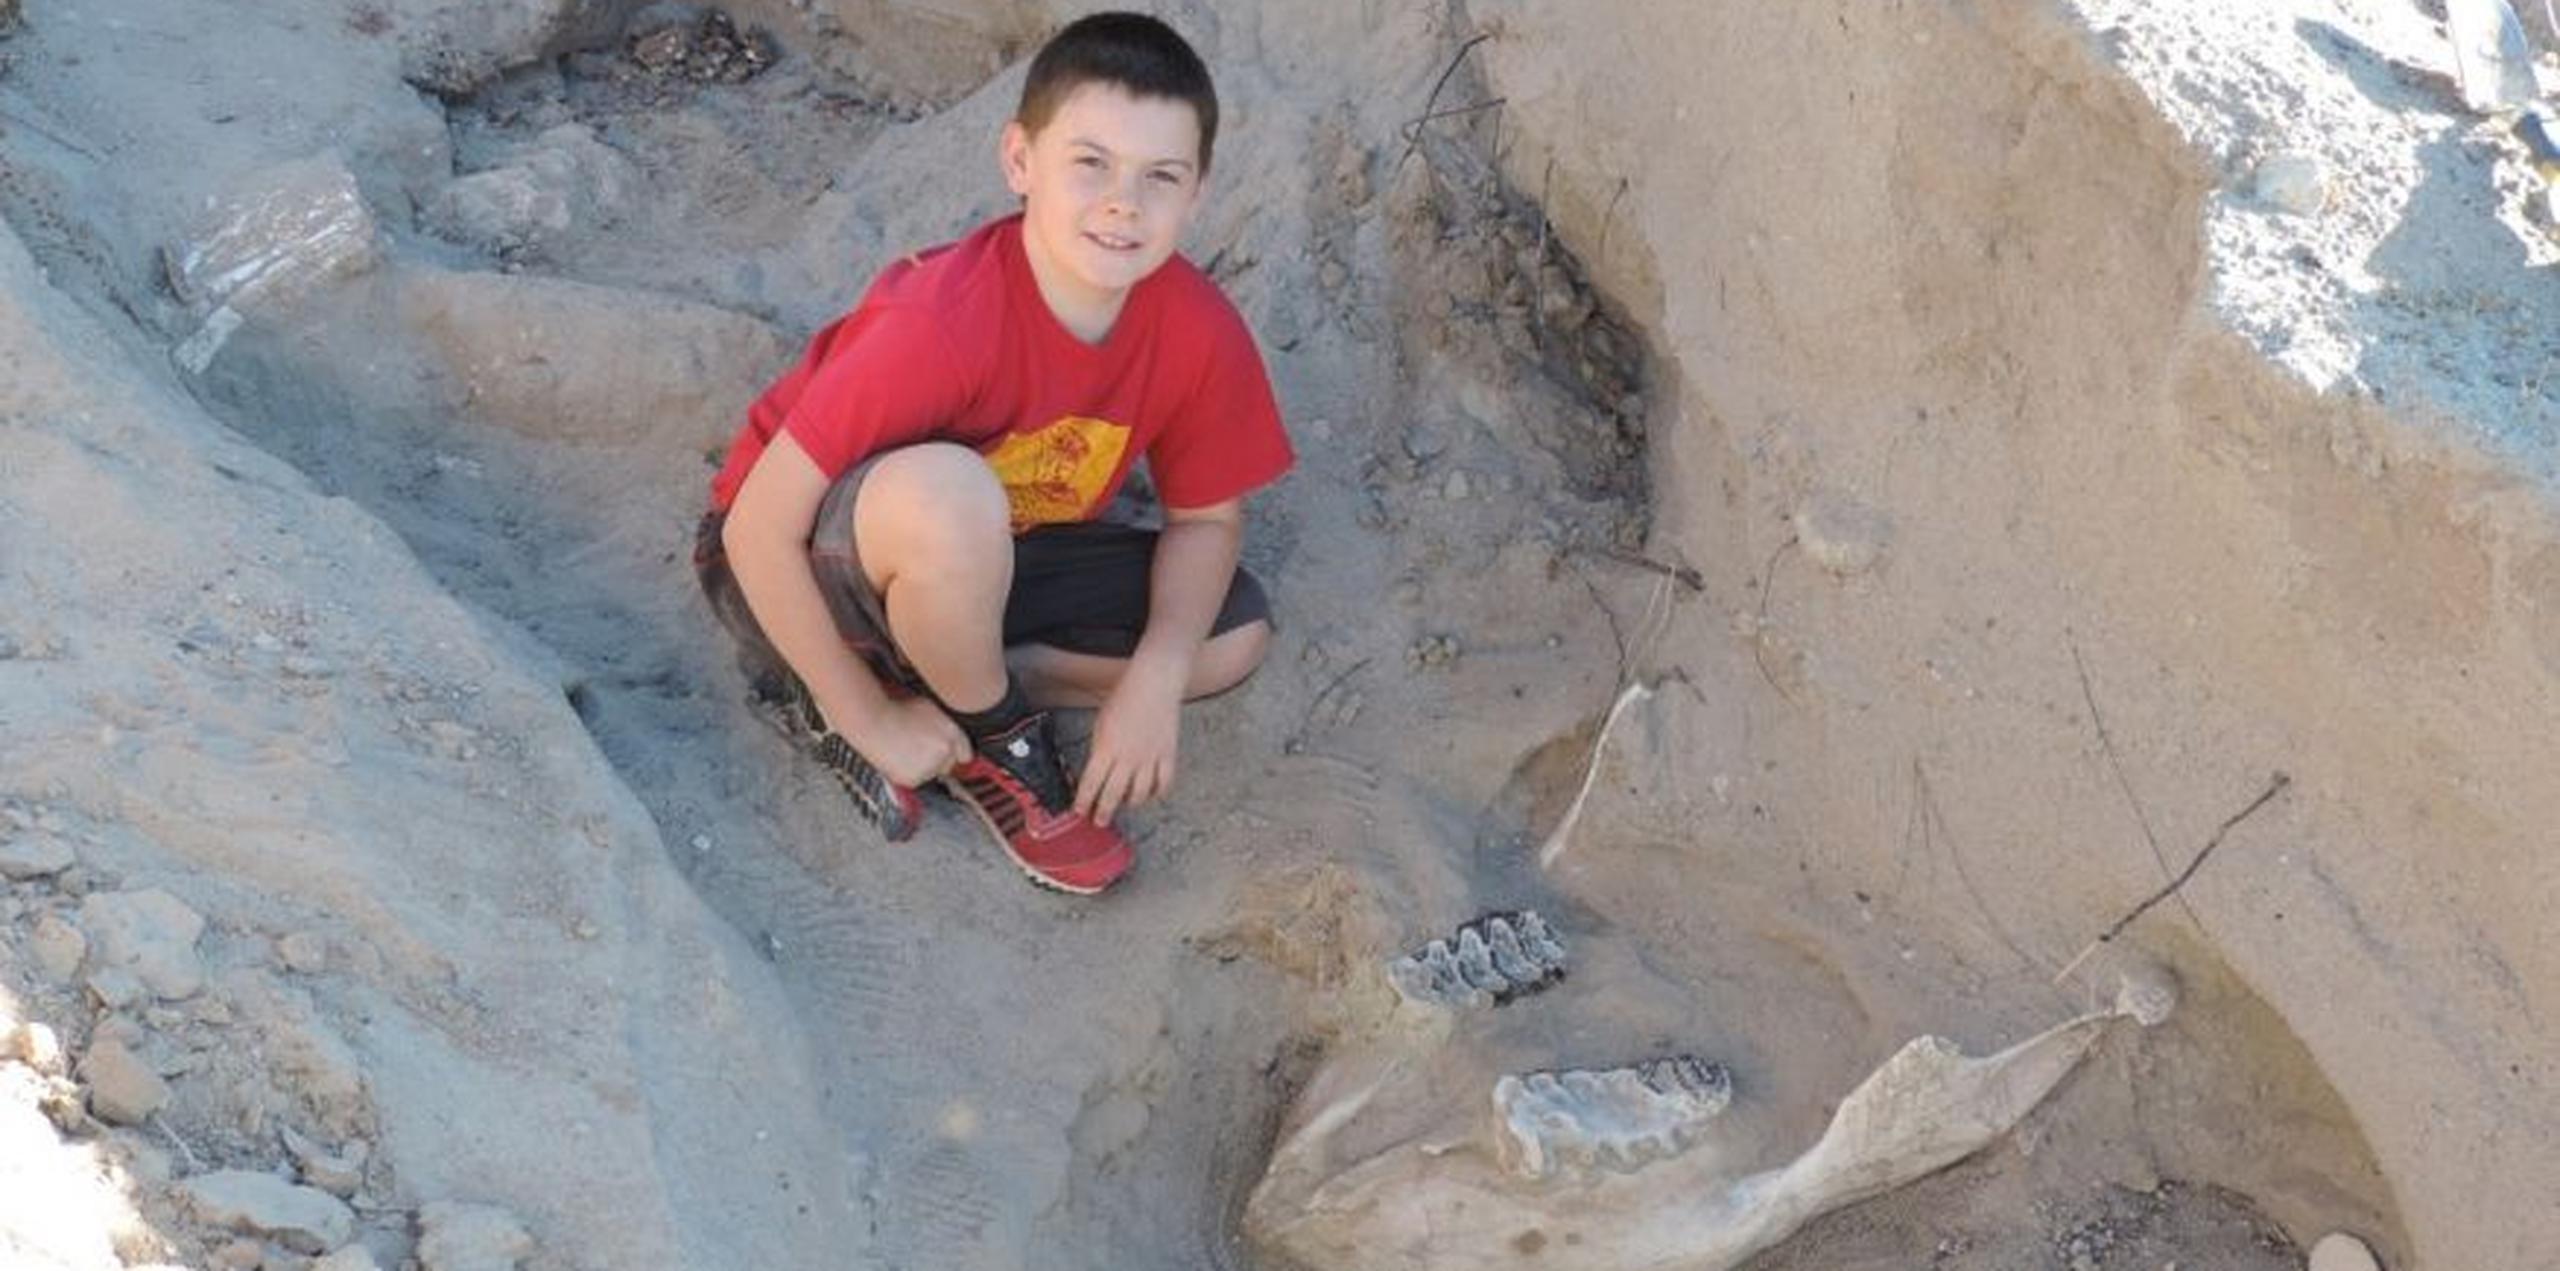 Jude Sparks, de 10 años, realizaba una excursión en el desierto cerca de Las Cruces cuando tropezó con lo que resultó ser el colmillo fosilizado de un estegomastodonte, una bestia similar al elefante. (Twitter)